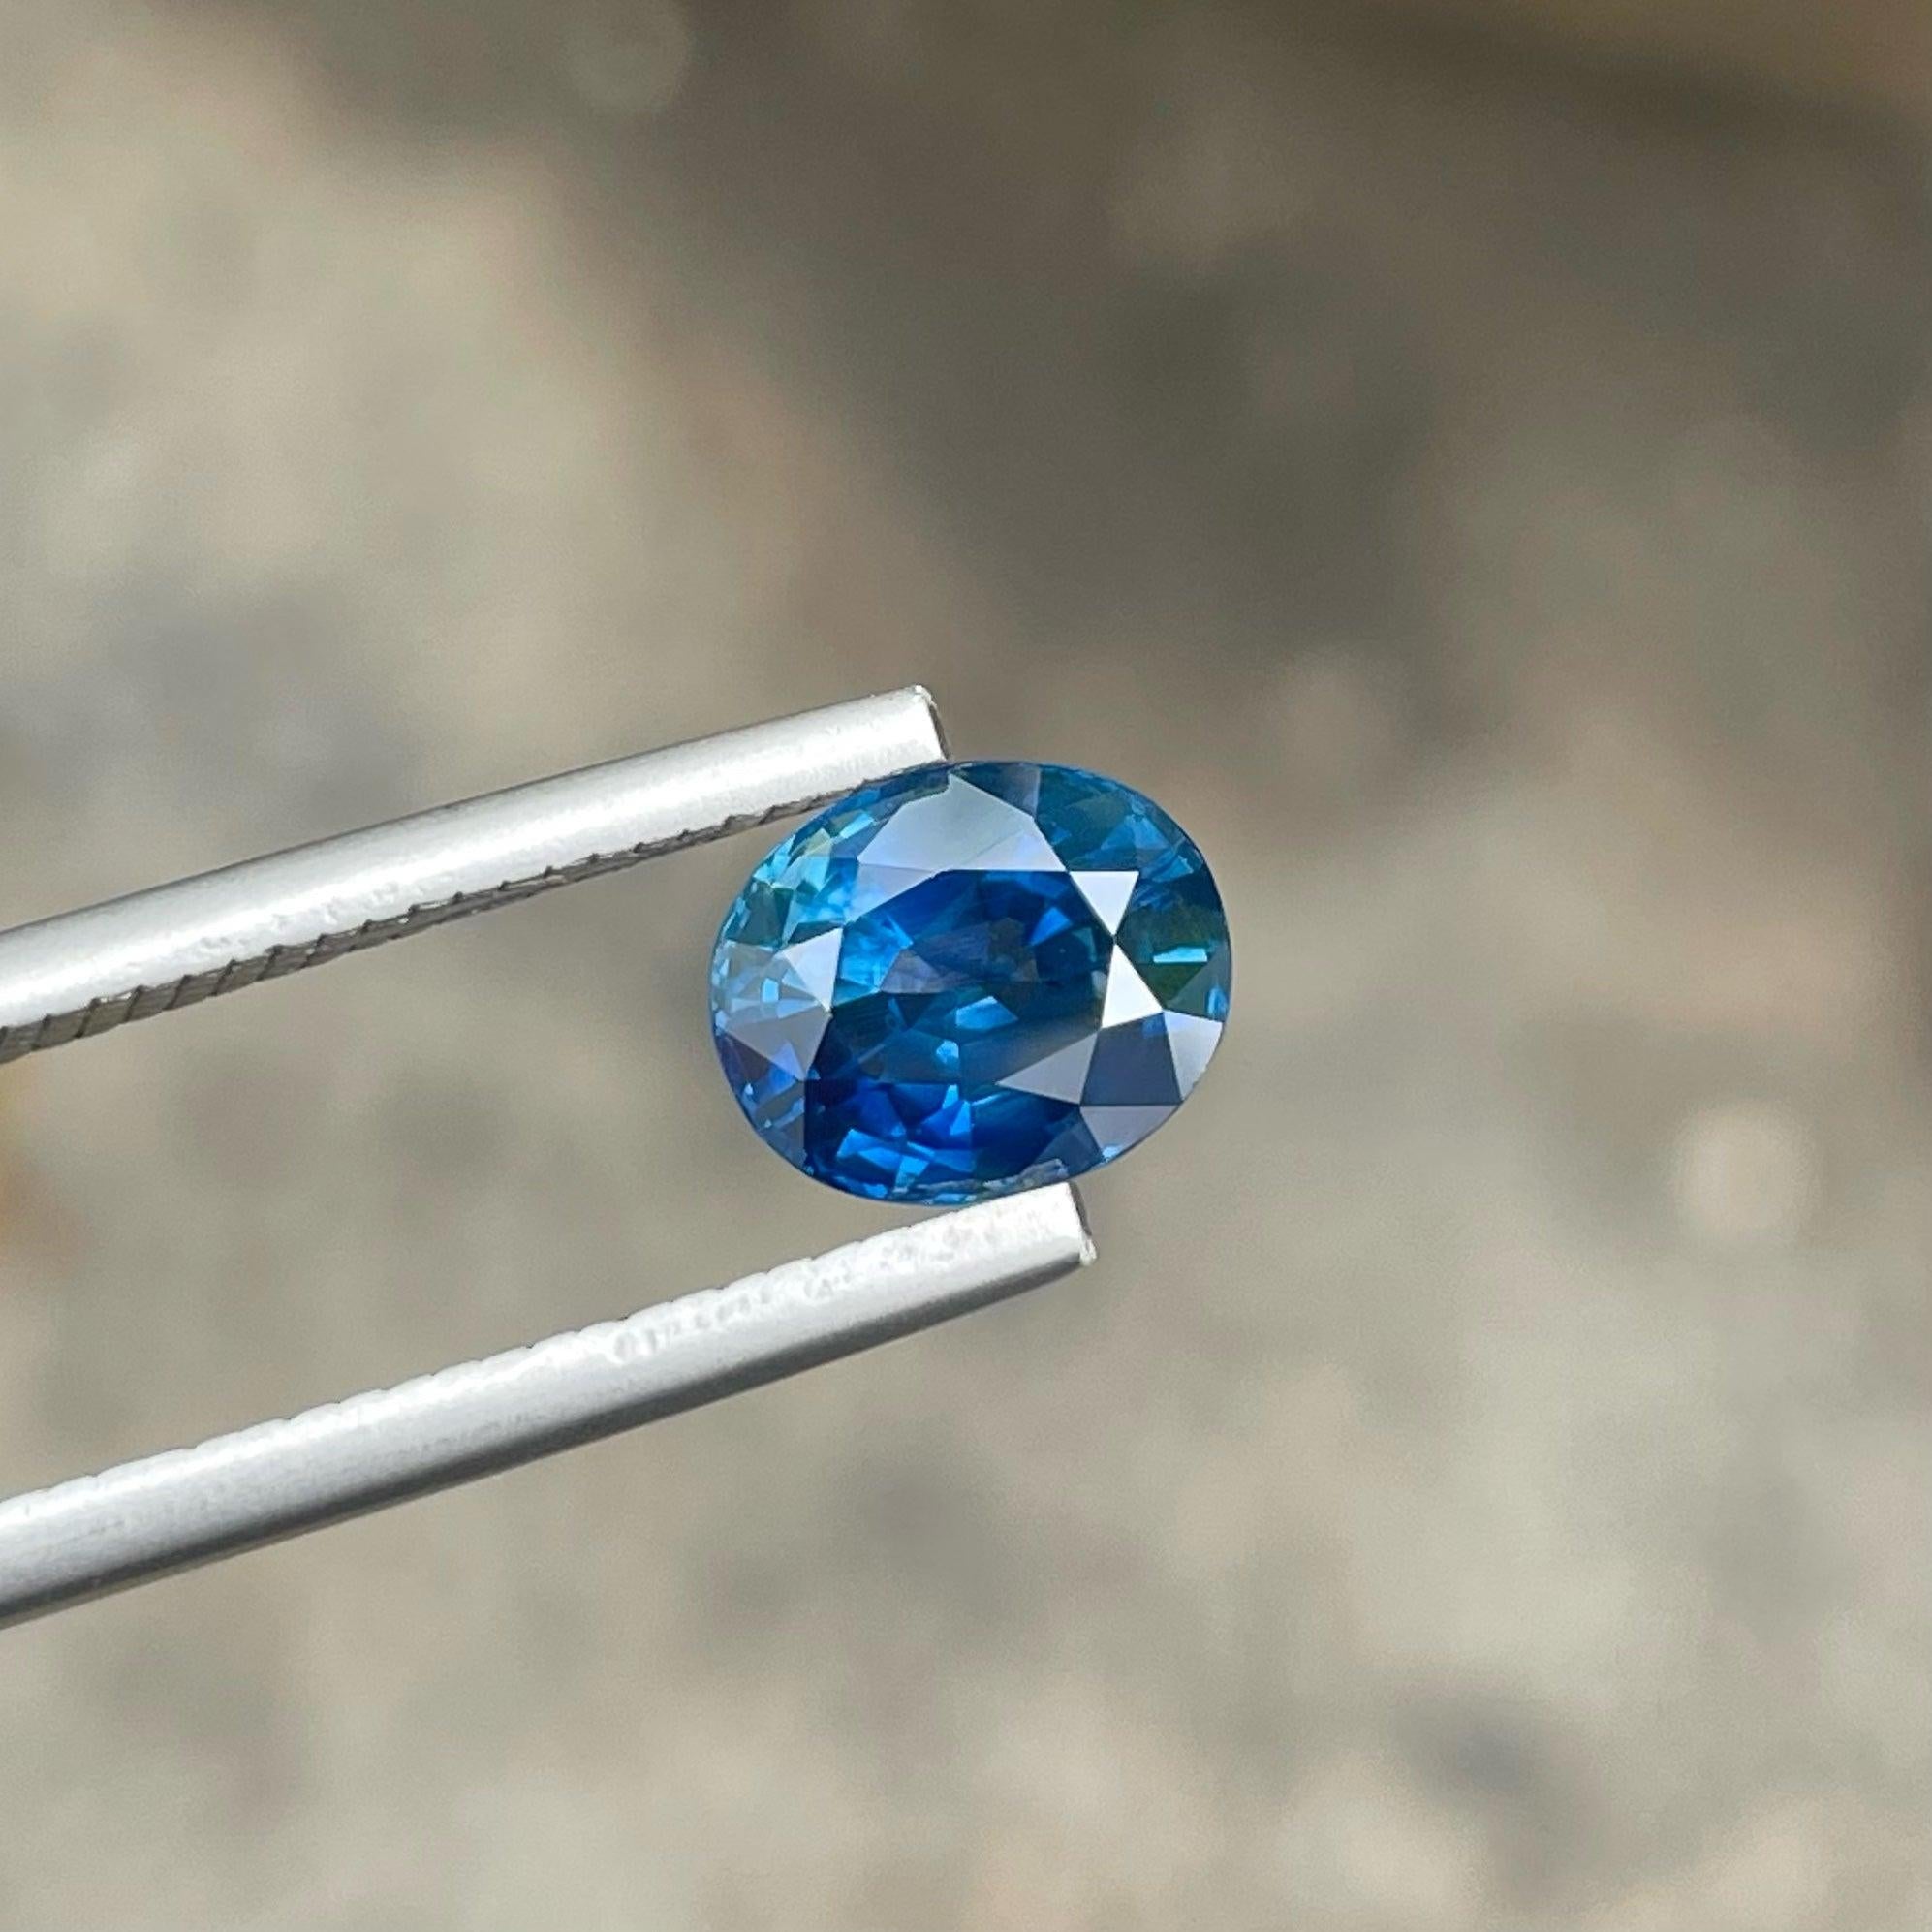 Fabuleux saphir naturel de Ceylan de 2,25 carats en provenance du Srilanka, de forme ovale, d'une incroyable couleur bleue et d'une grande brillance. Cette pierre précieuse est d'une clarté totale de VVS.

Informations sur le produit :
TYPE DE